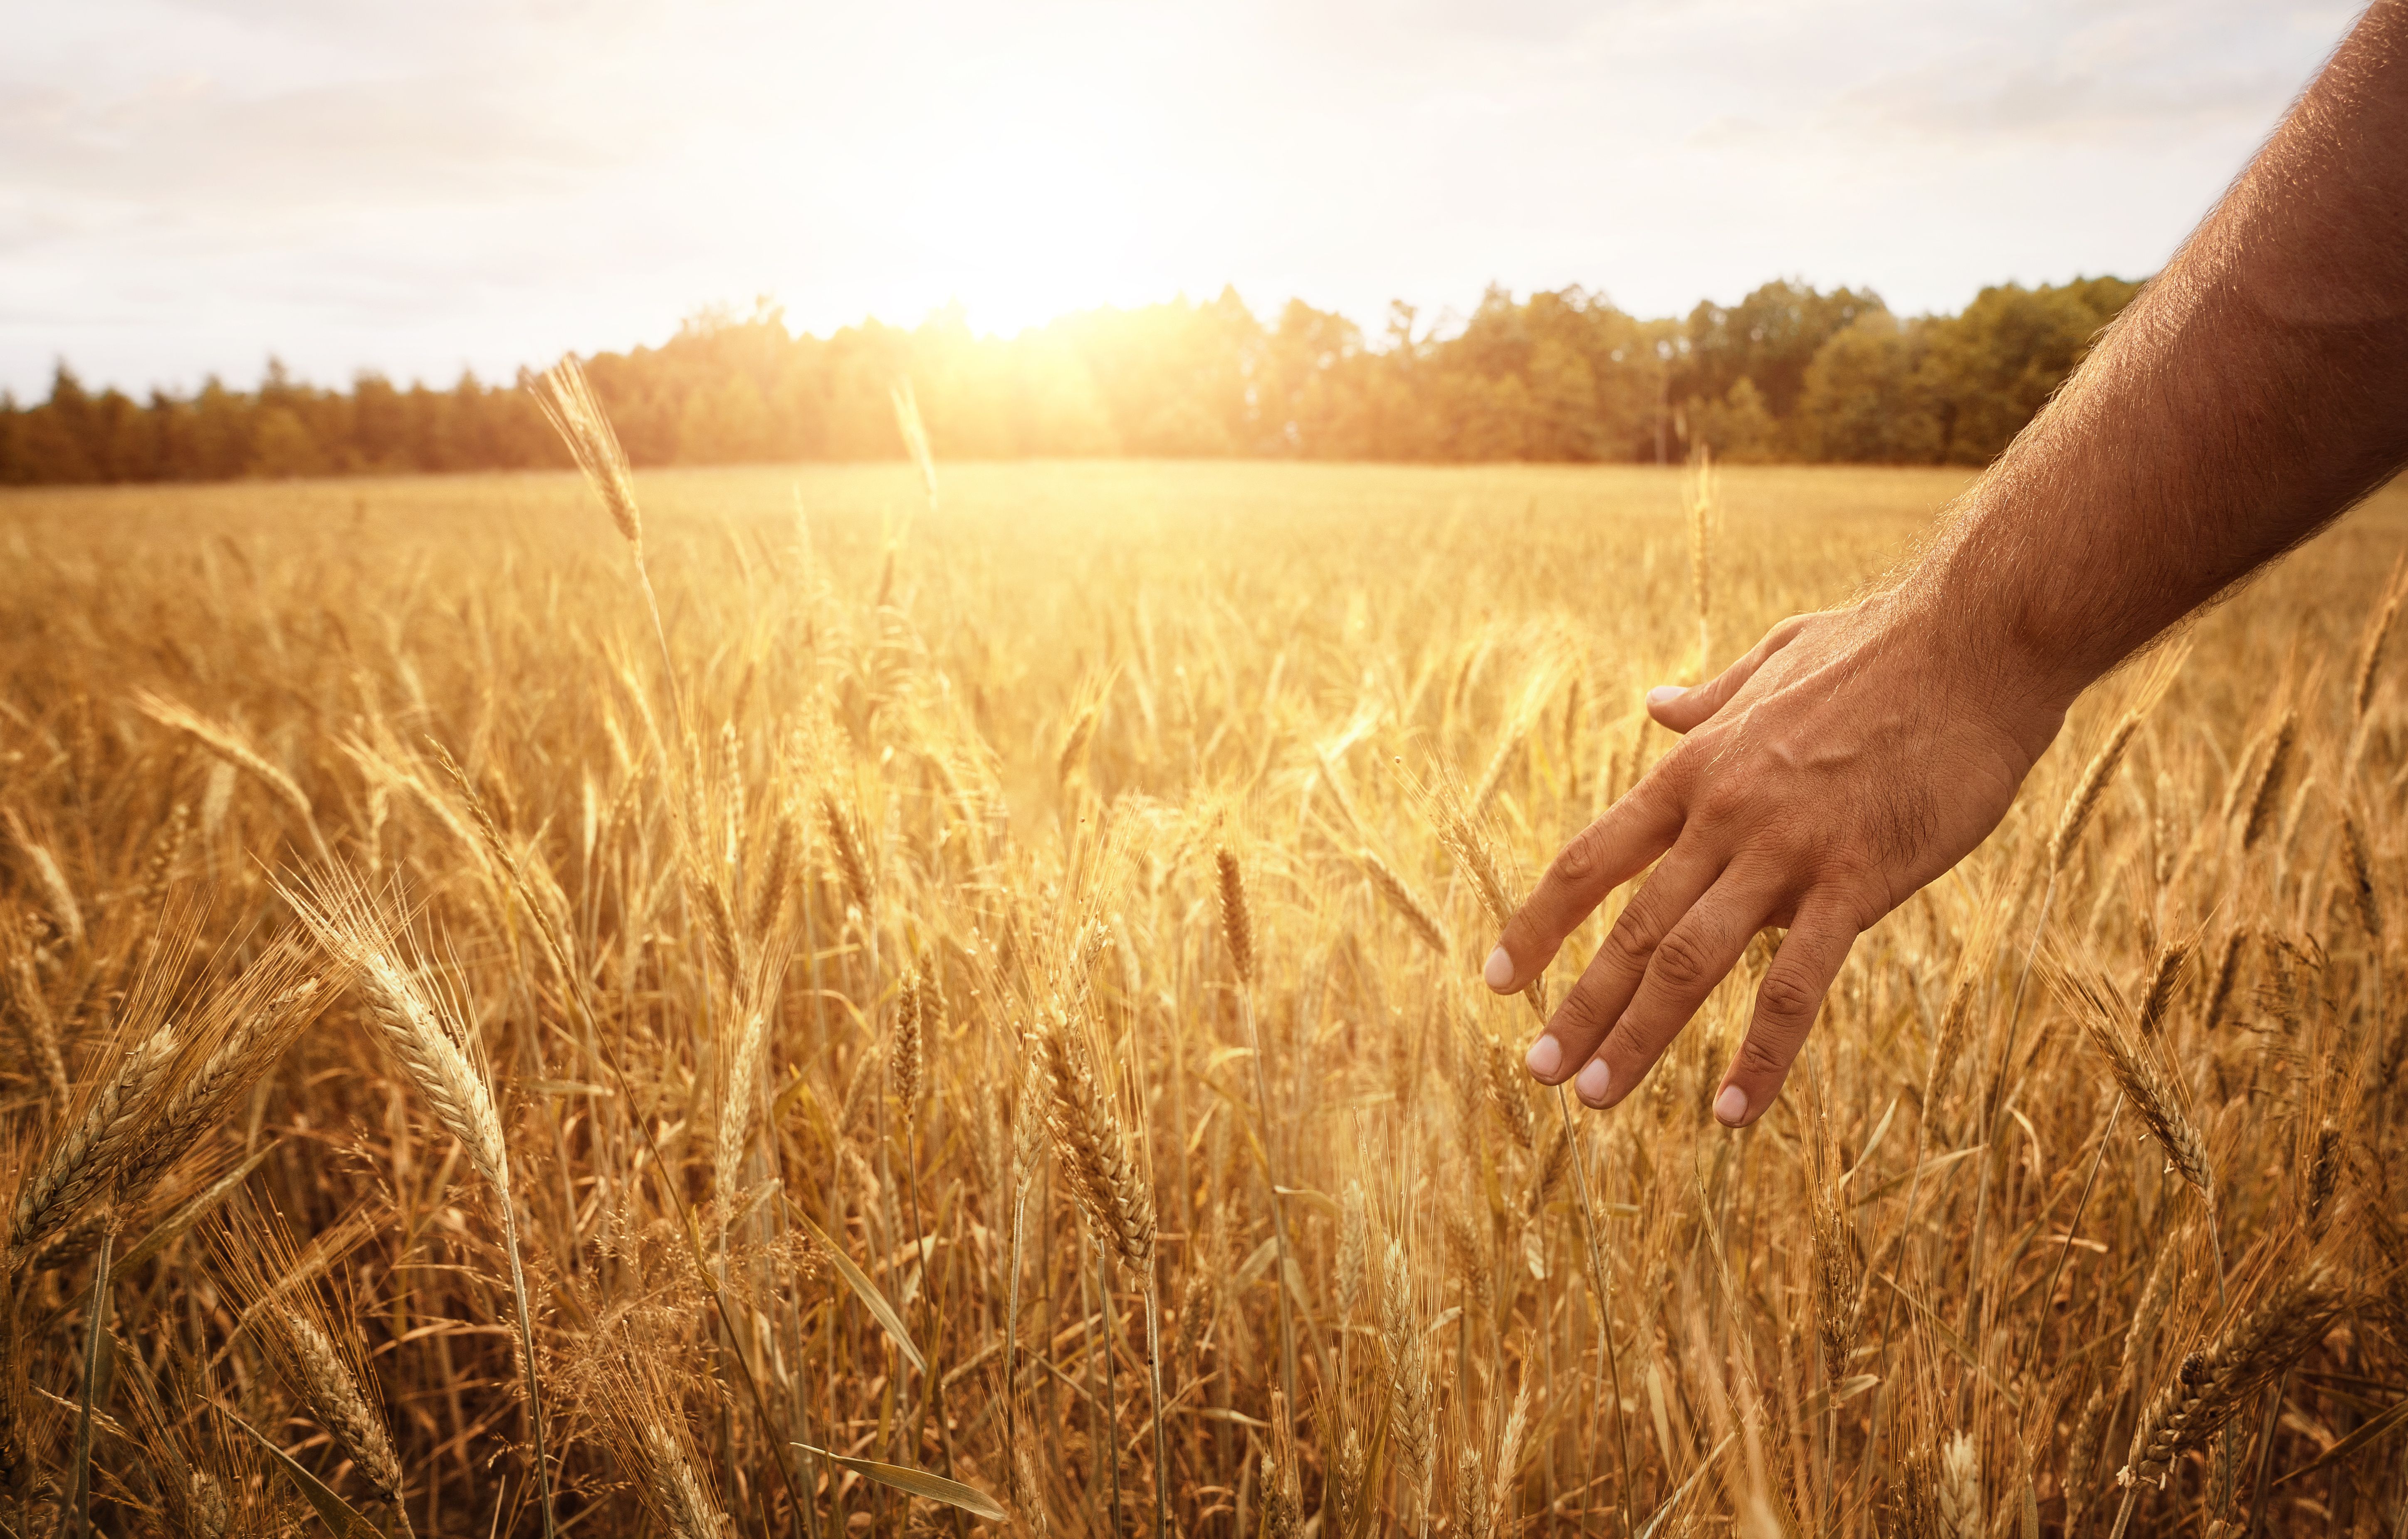 Группа людей в поле. Поле с колосьями. Пшеничное поле. Поле с колосками пшеницы. Колоски пшеницы в руках.